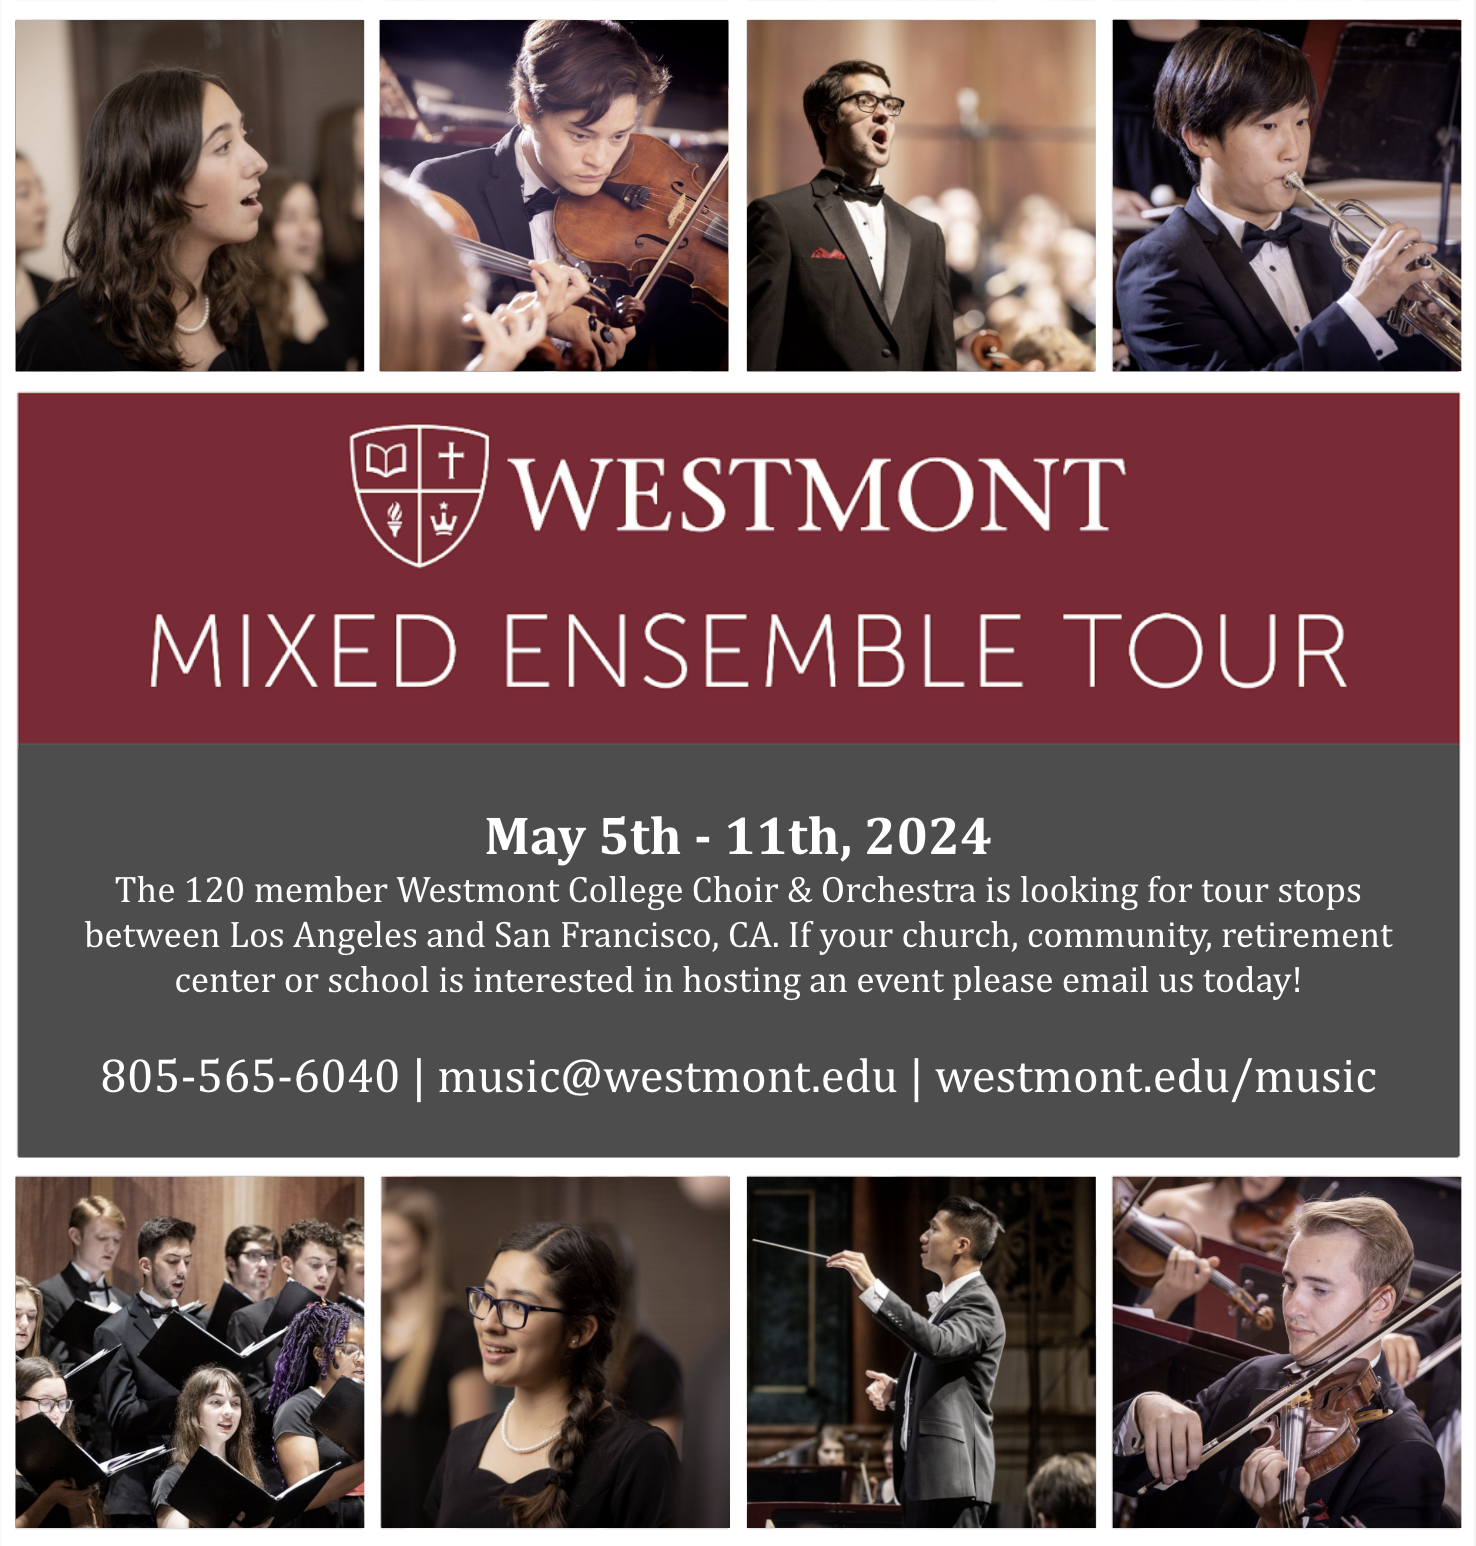 Mixed Ensemble Tour Flyer